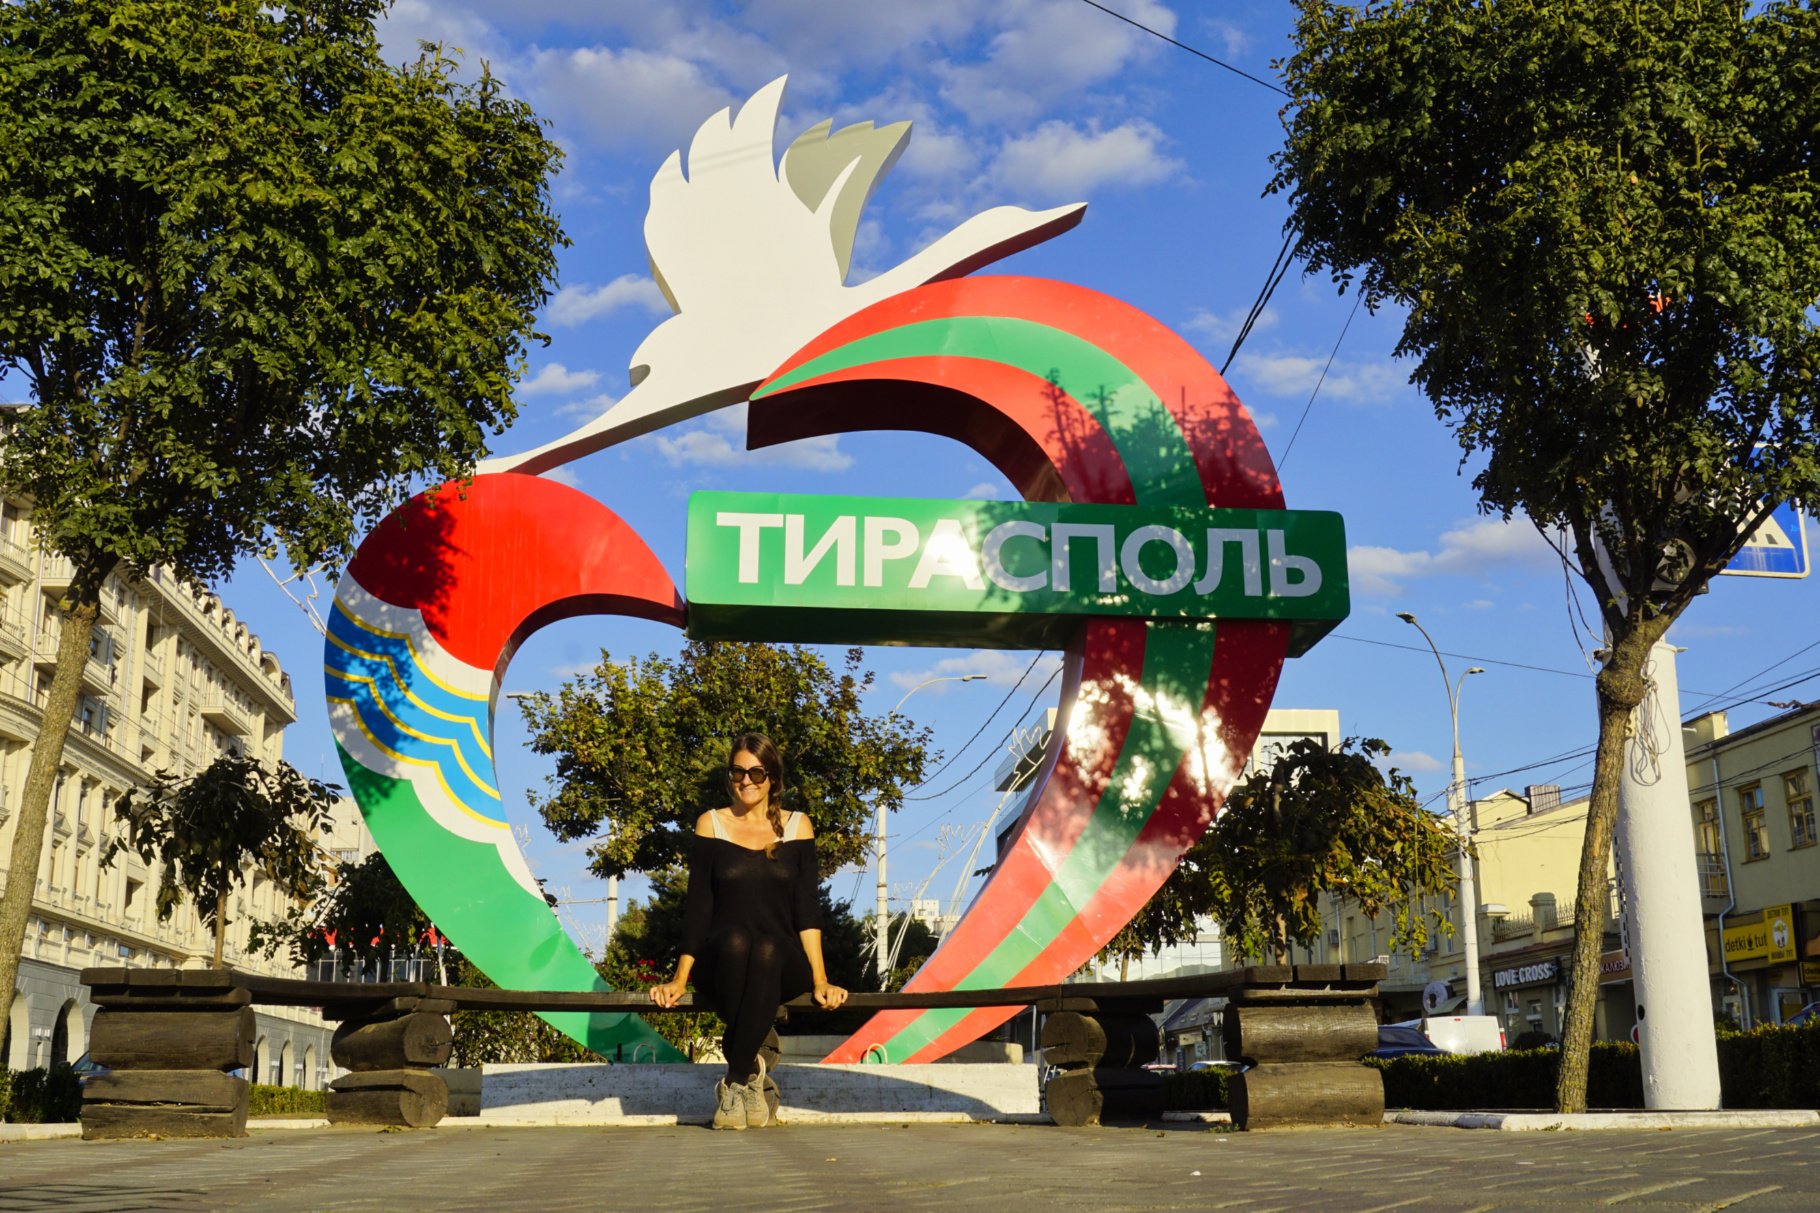 Tiraspol, Transnistria - Experiencing the Globe